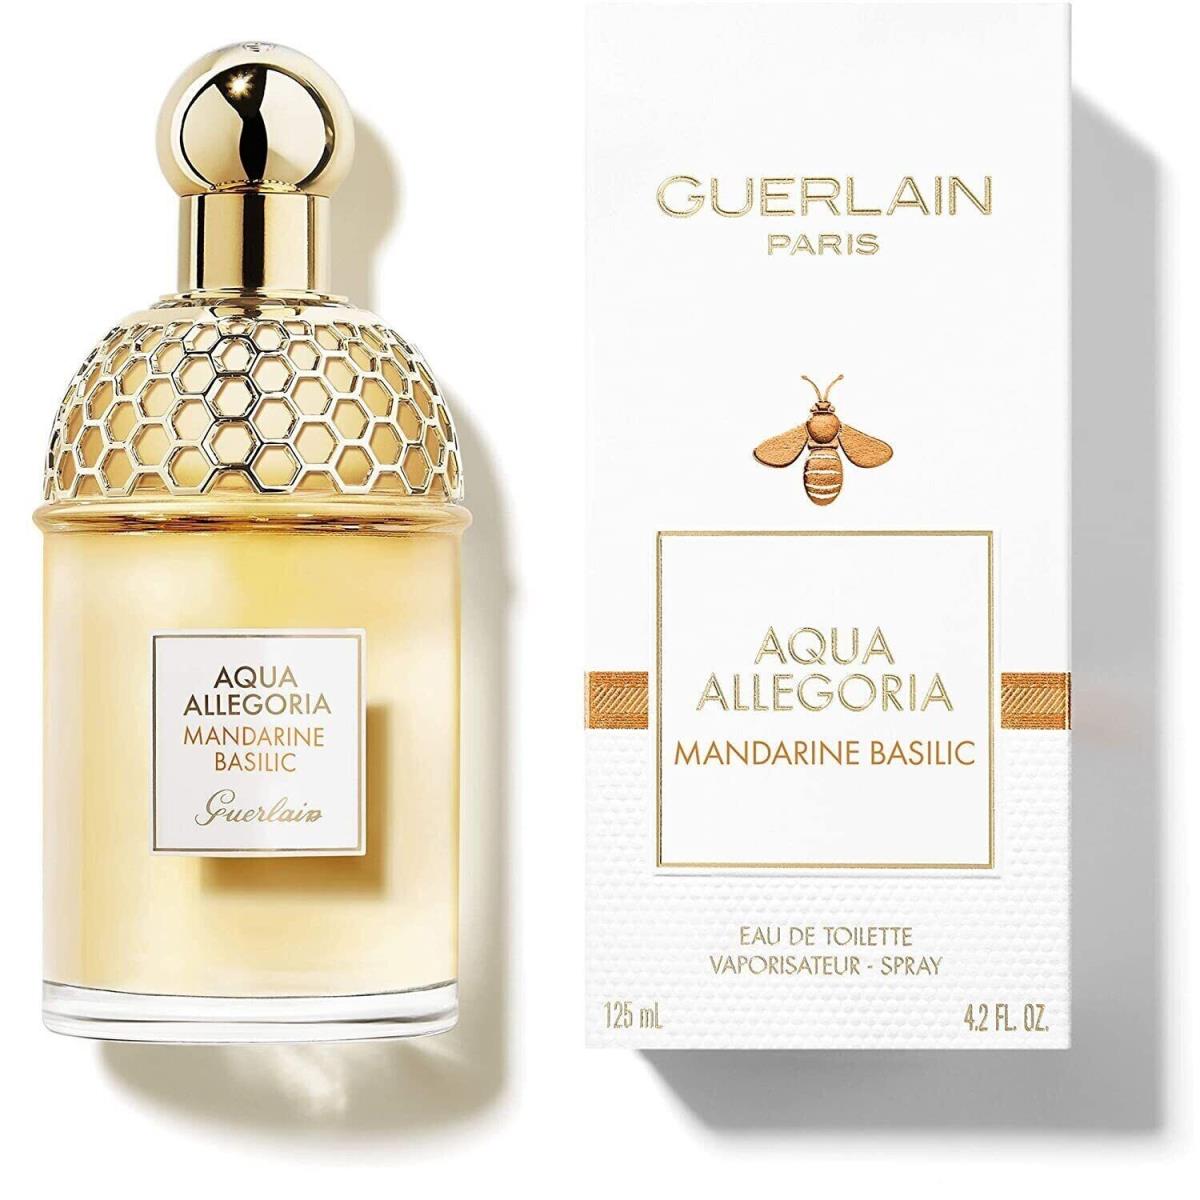 Aqua Allegoria Mandarine Basilic 4.2 OZ Edt Women Perfume Guerlain Bent Box